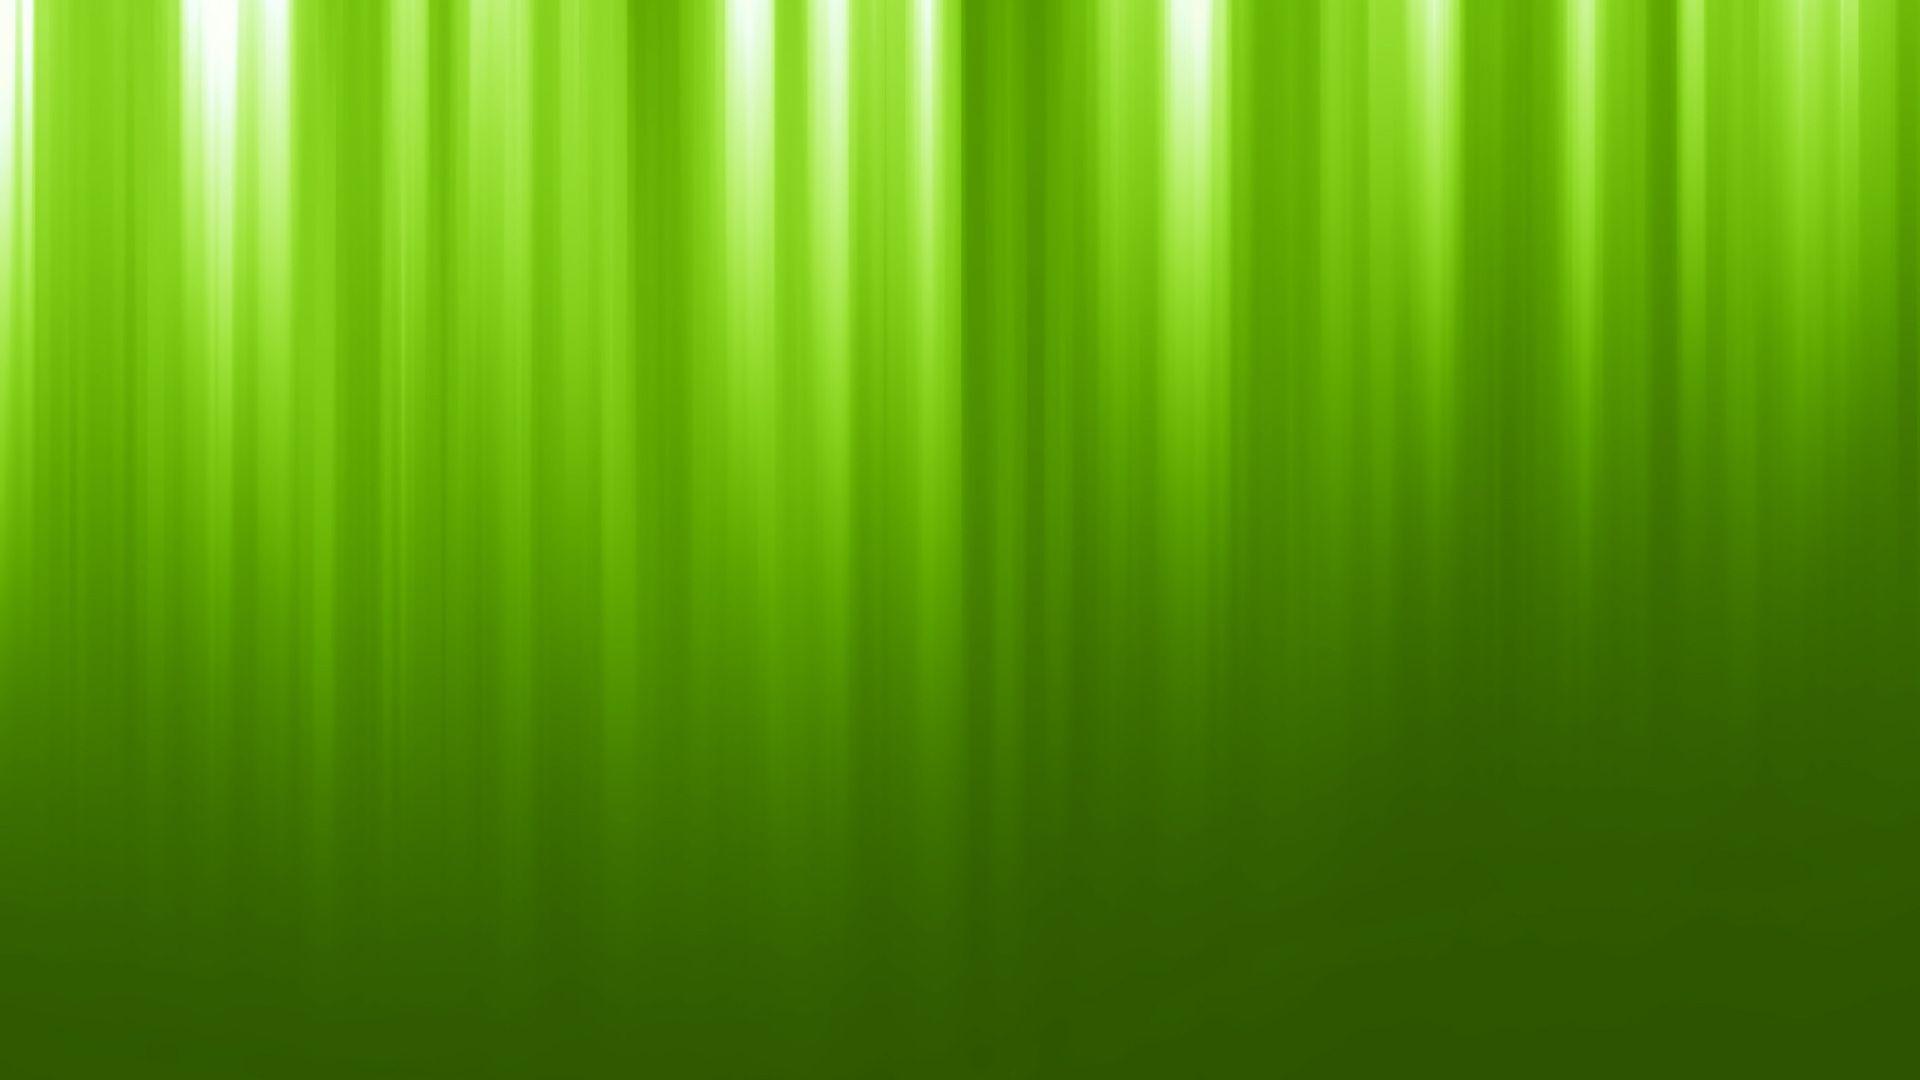 1920x1080 Hình nền xanh lá cây 17313 1920x1080 px